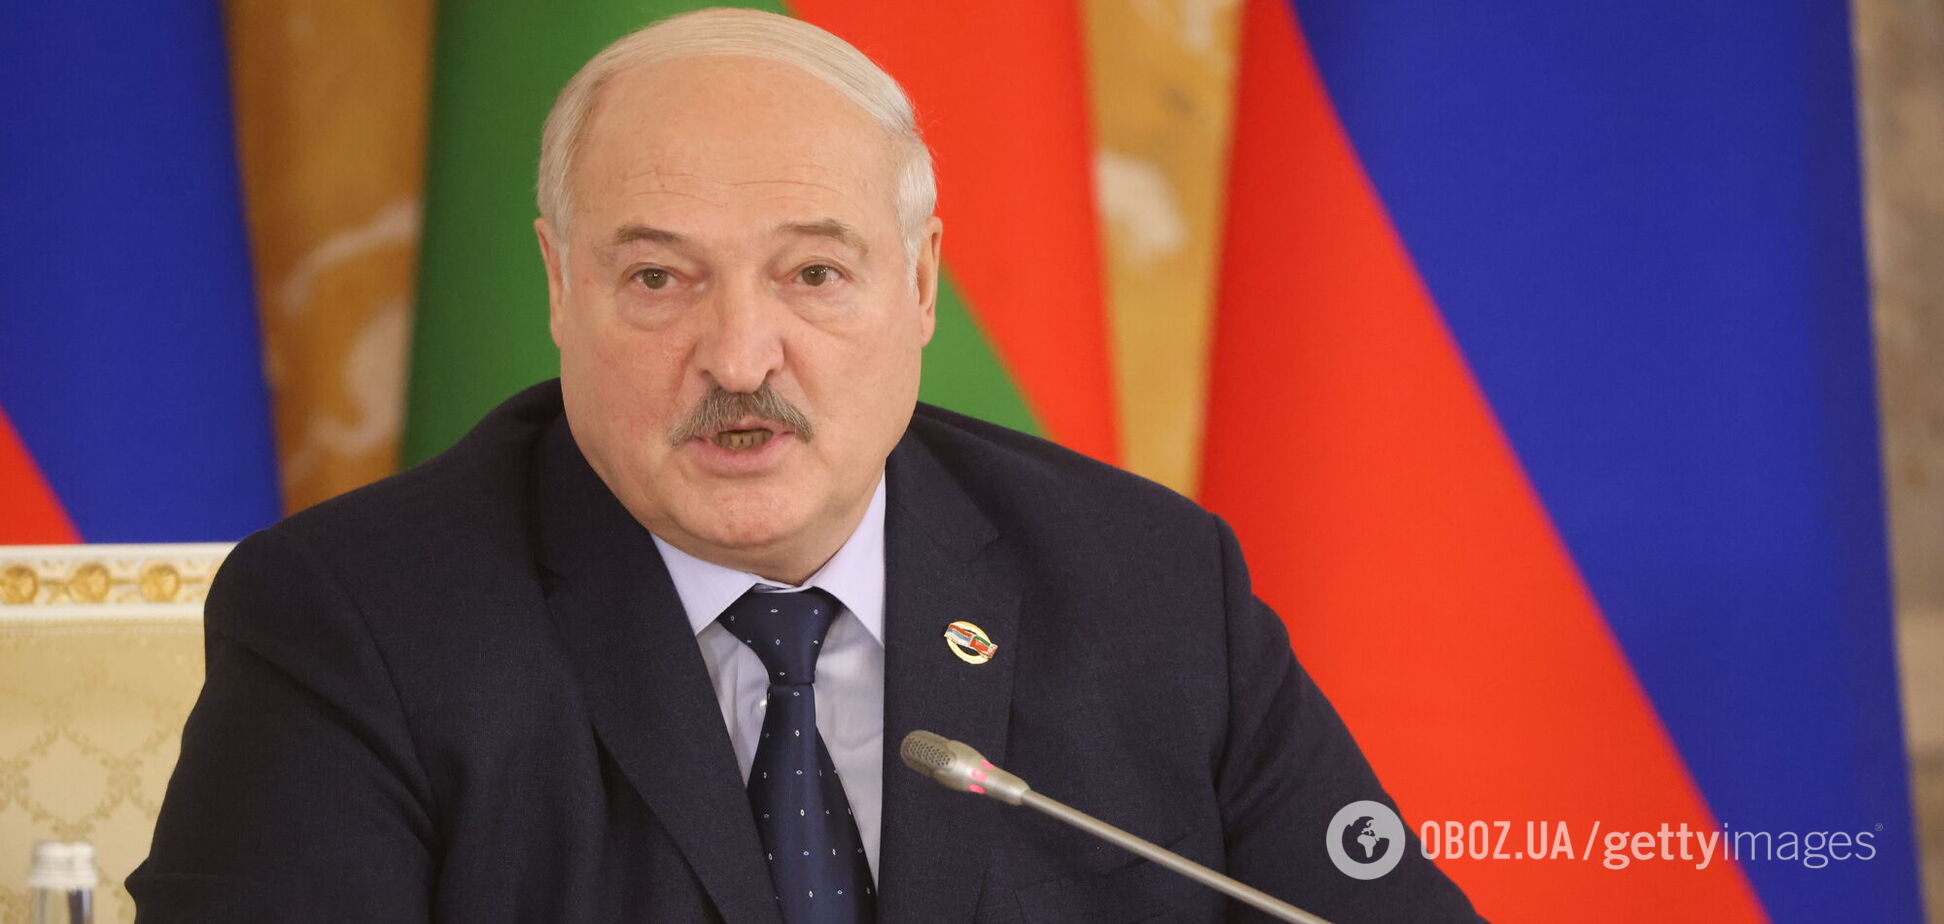 'Говорю откровенно': Лукашенко заявил, что Беларусь готовится к войне, но ради мира